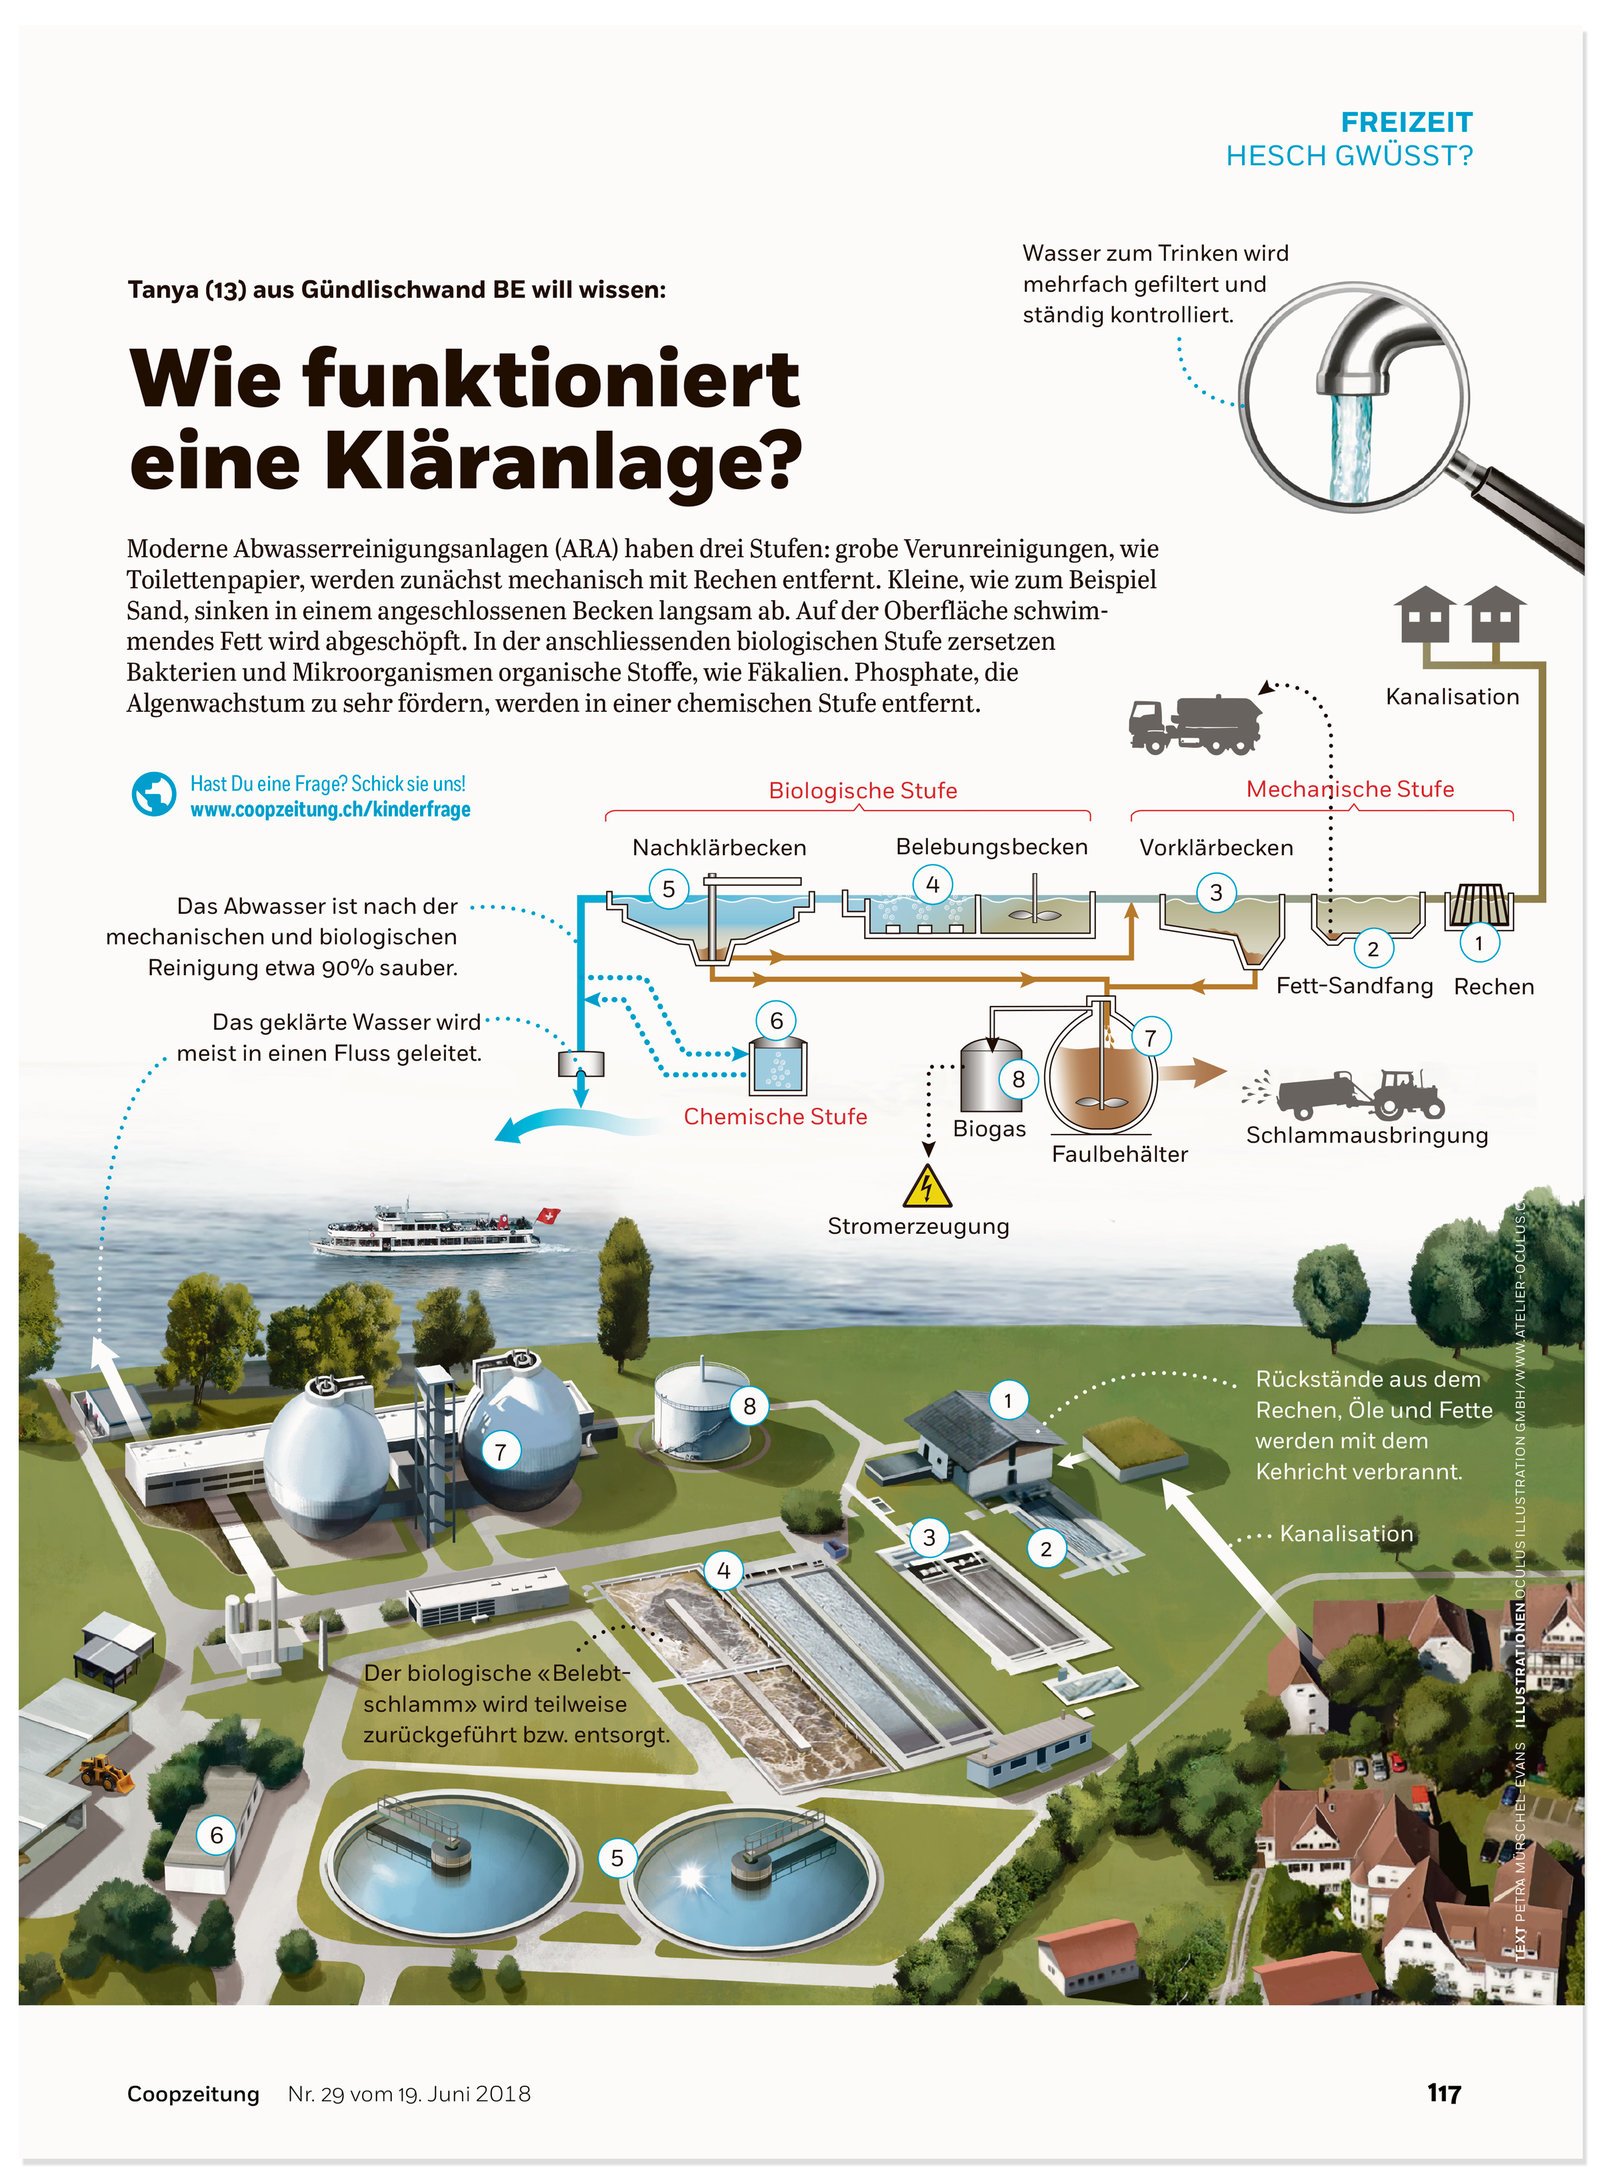 oculus-illustration-coopzeitung-hesch-gwuesst-klaeranlage